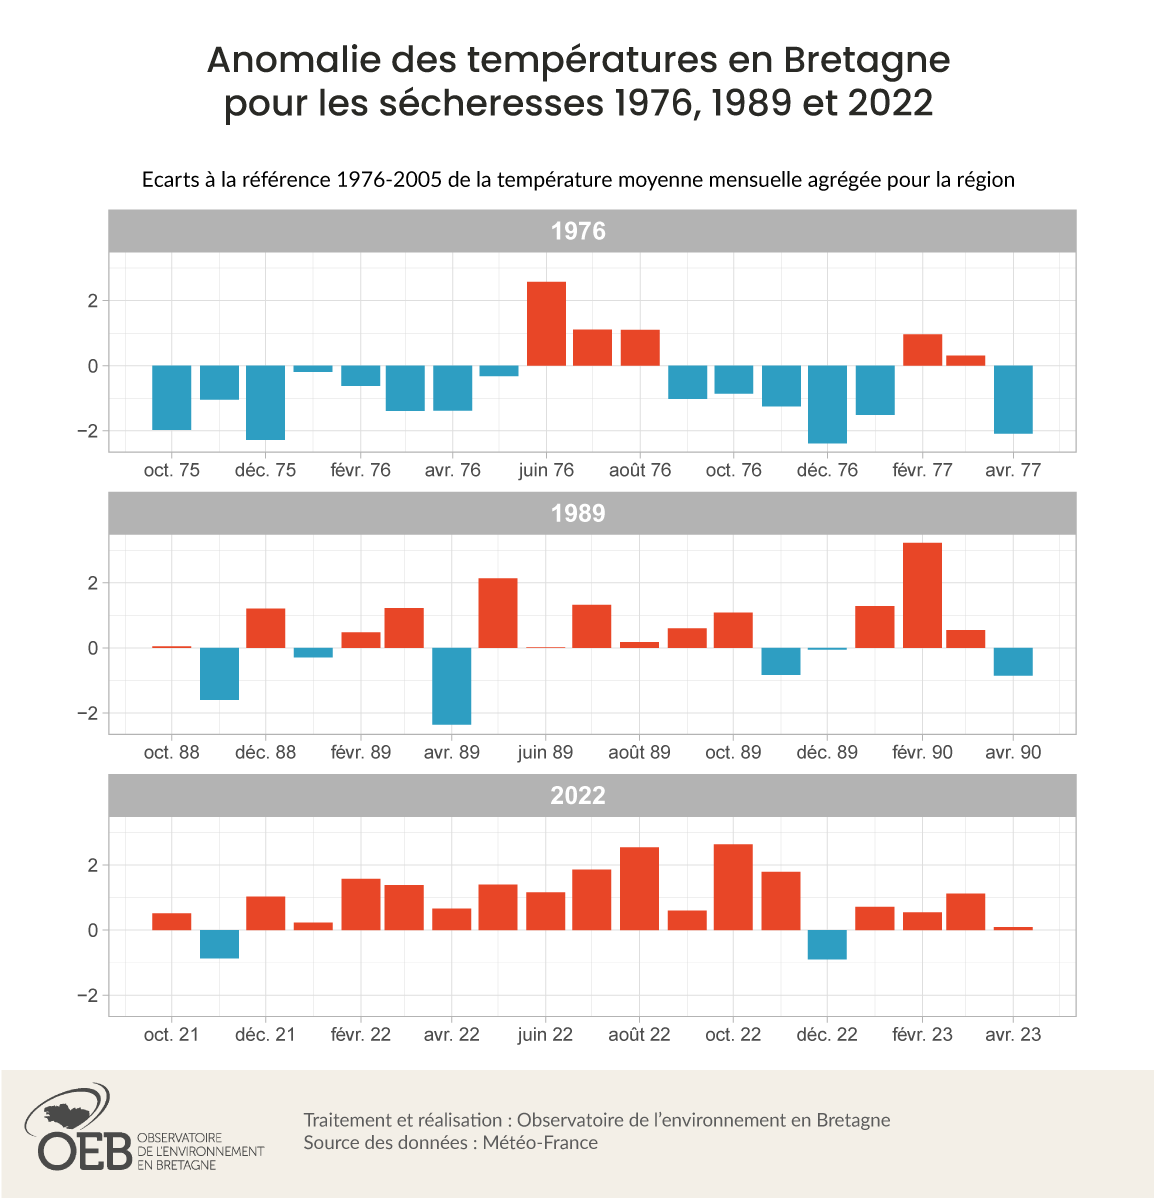 Anomalie des températures en Bretagne pour les sécheresses 1976, 1989 et 2022